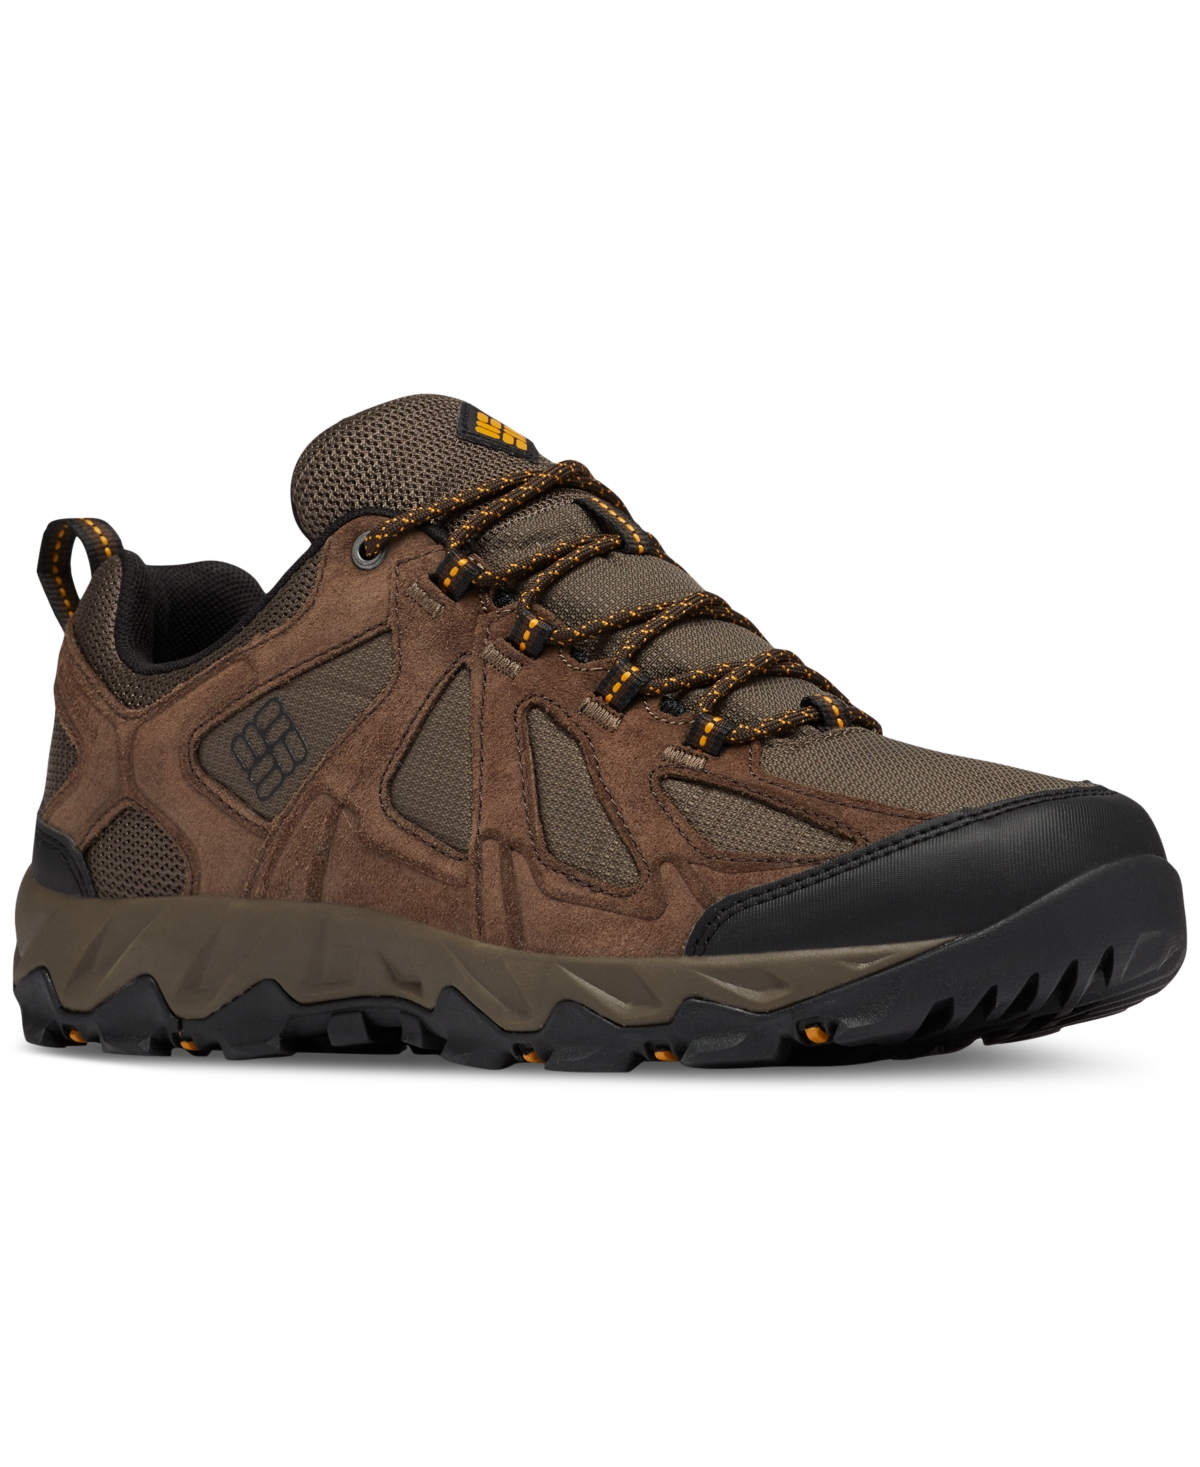 Men's Peakfreak Xcsrn Ii Hiking Shoes - MUD, SQUASH